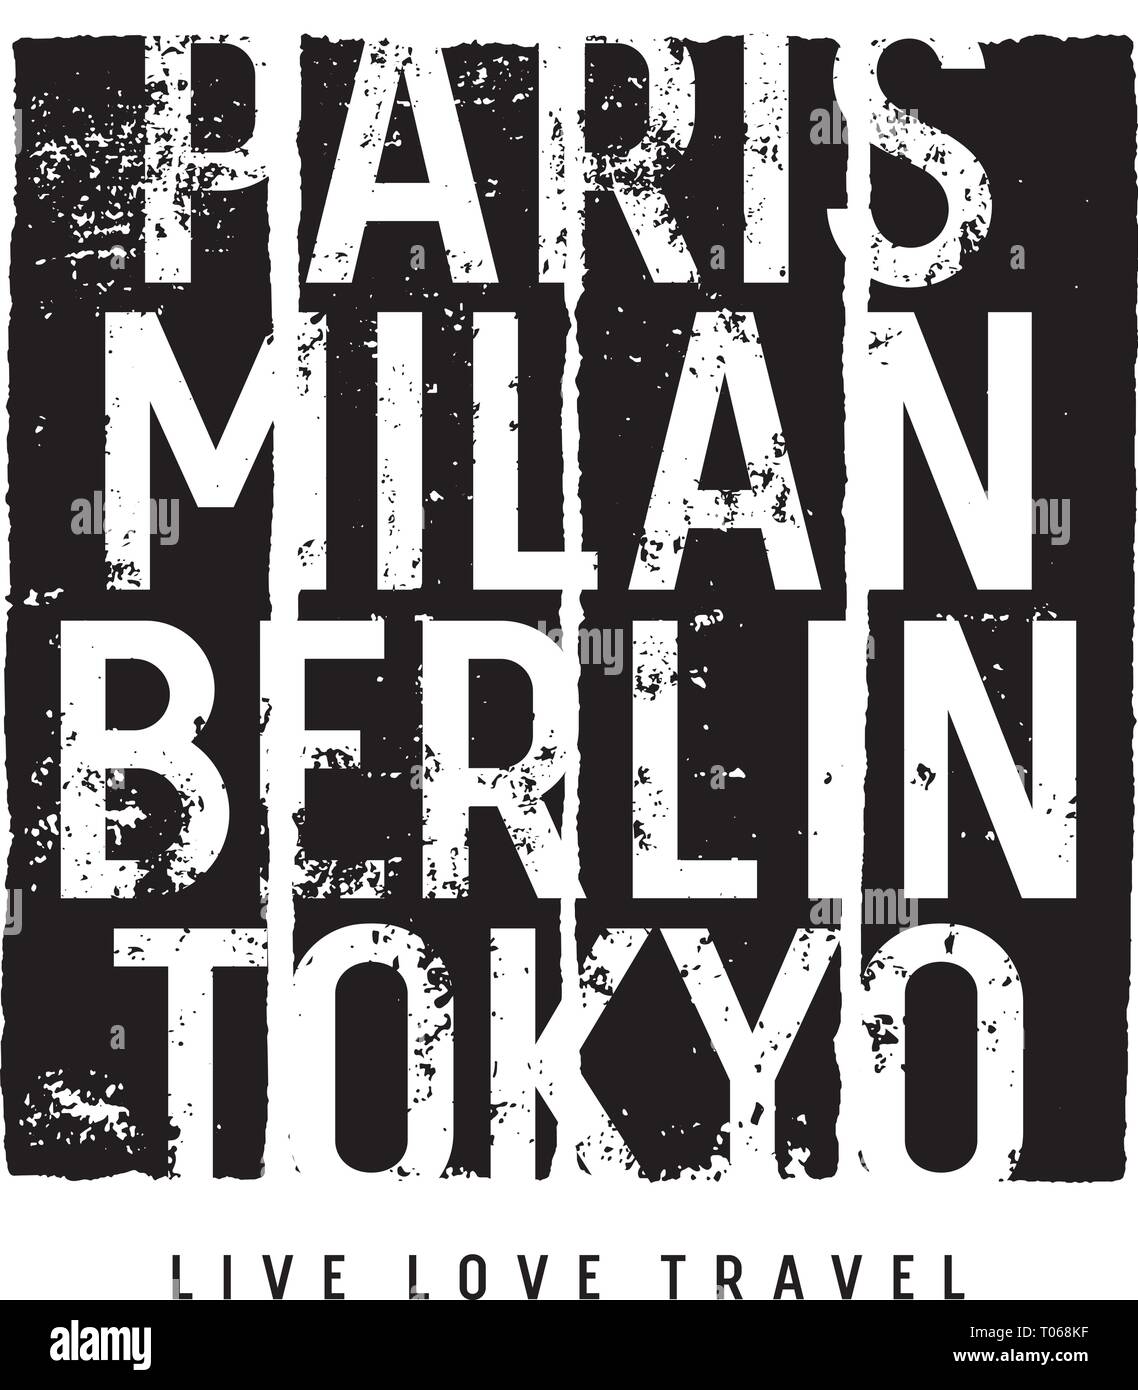 Città tipografia per T-shirt design, Posters e stampe. Iscrizioni 'Milan, Parigi, Berlino, Tokyo' e 'Live. L'amore. Viaggi". Grunge gli elementi di design. Illustrazione Vettoriale